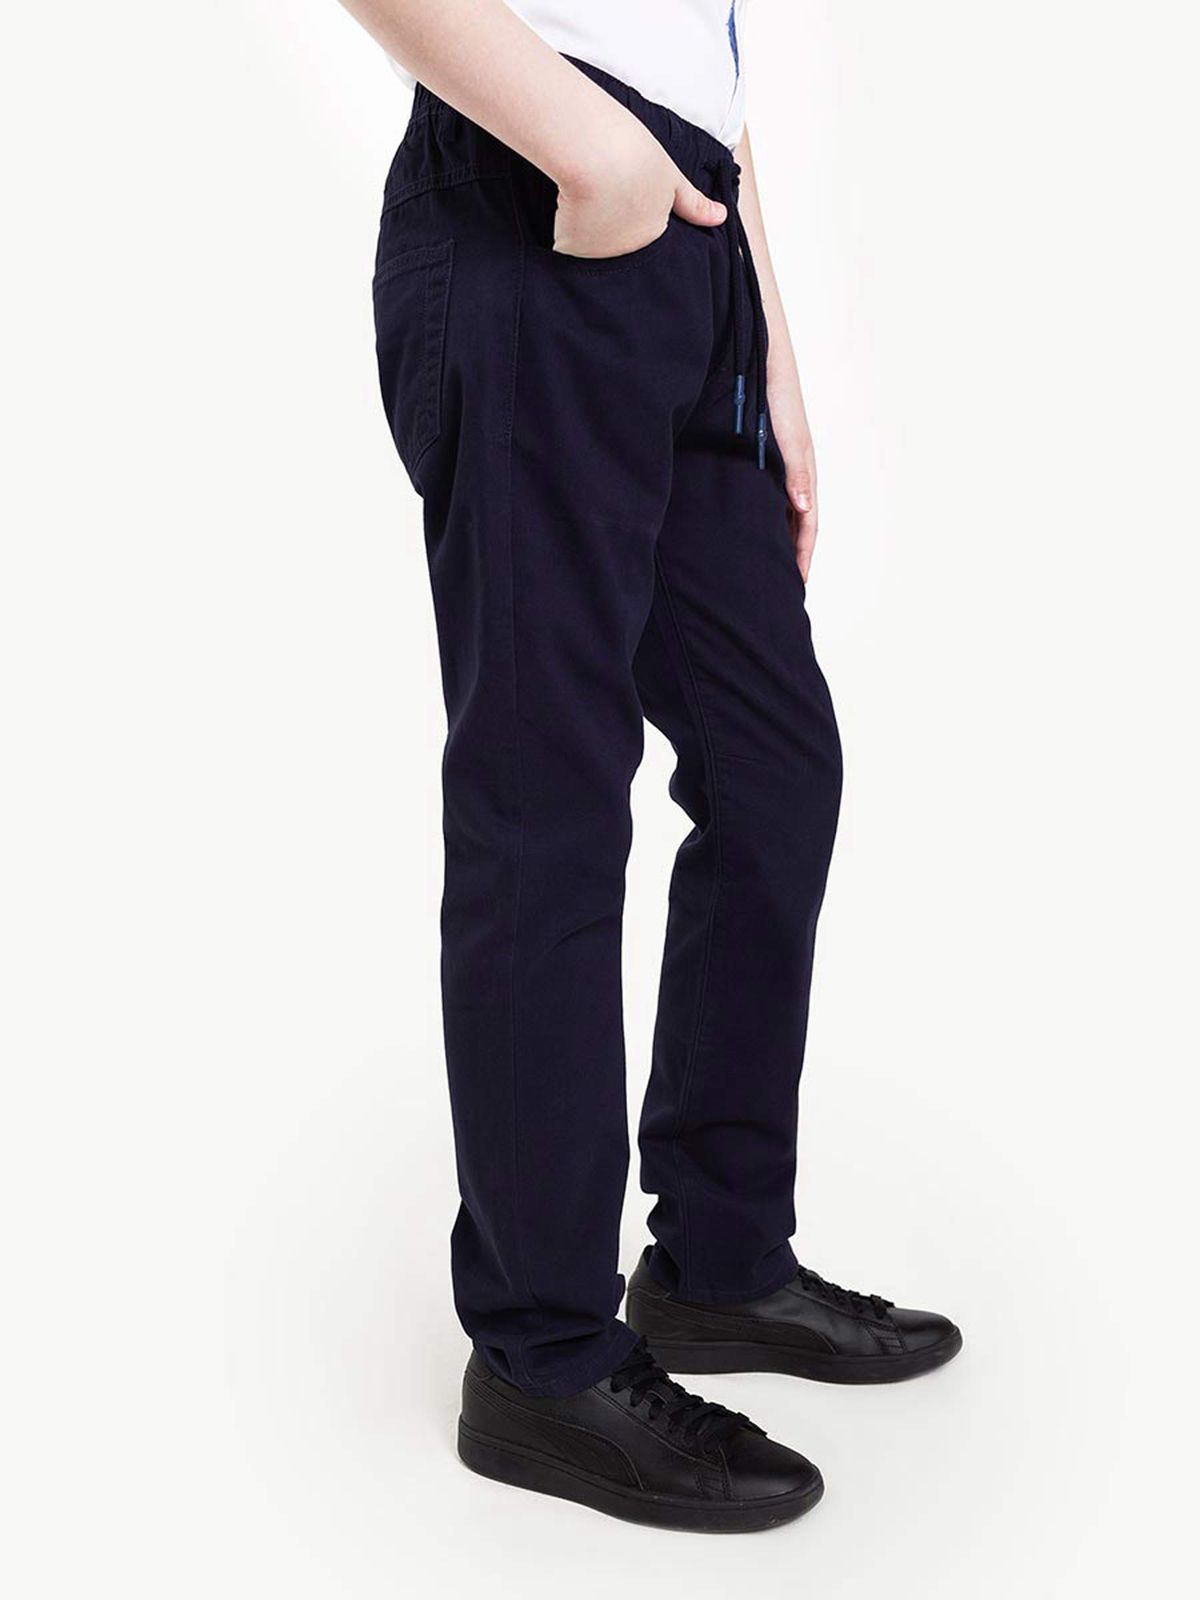 Синие брюки на резинке для мальчика BSU000101-1 купить по цене от 299рублей с доставкой по России